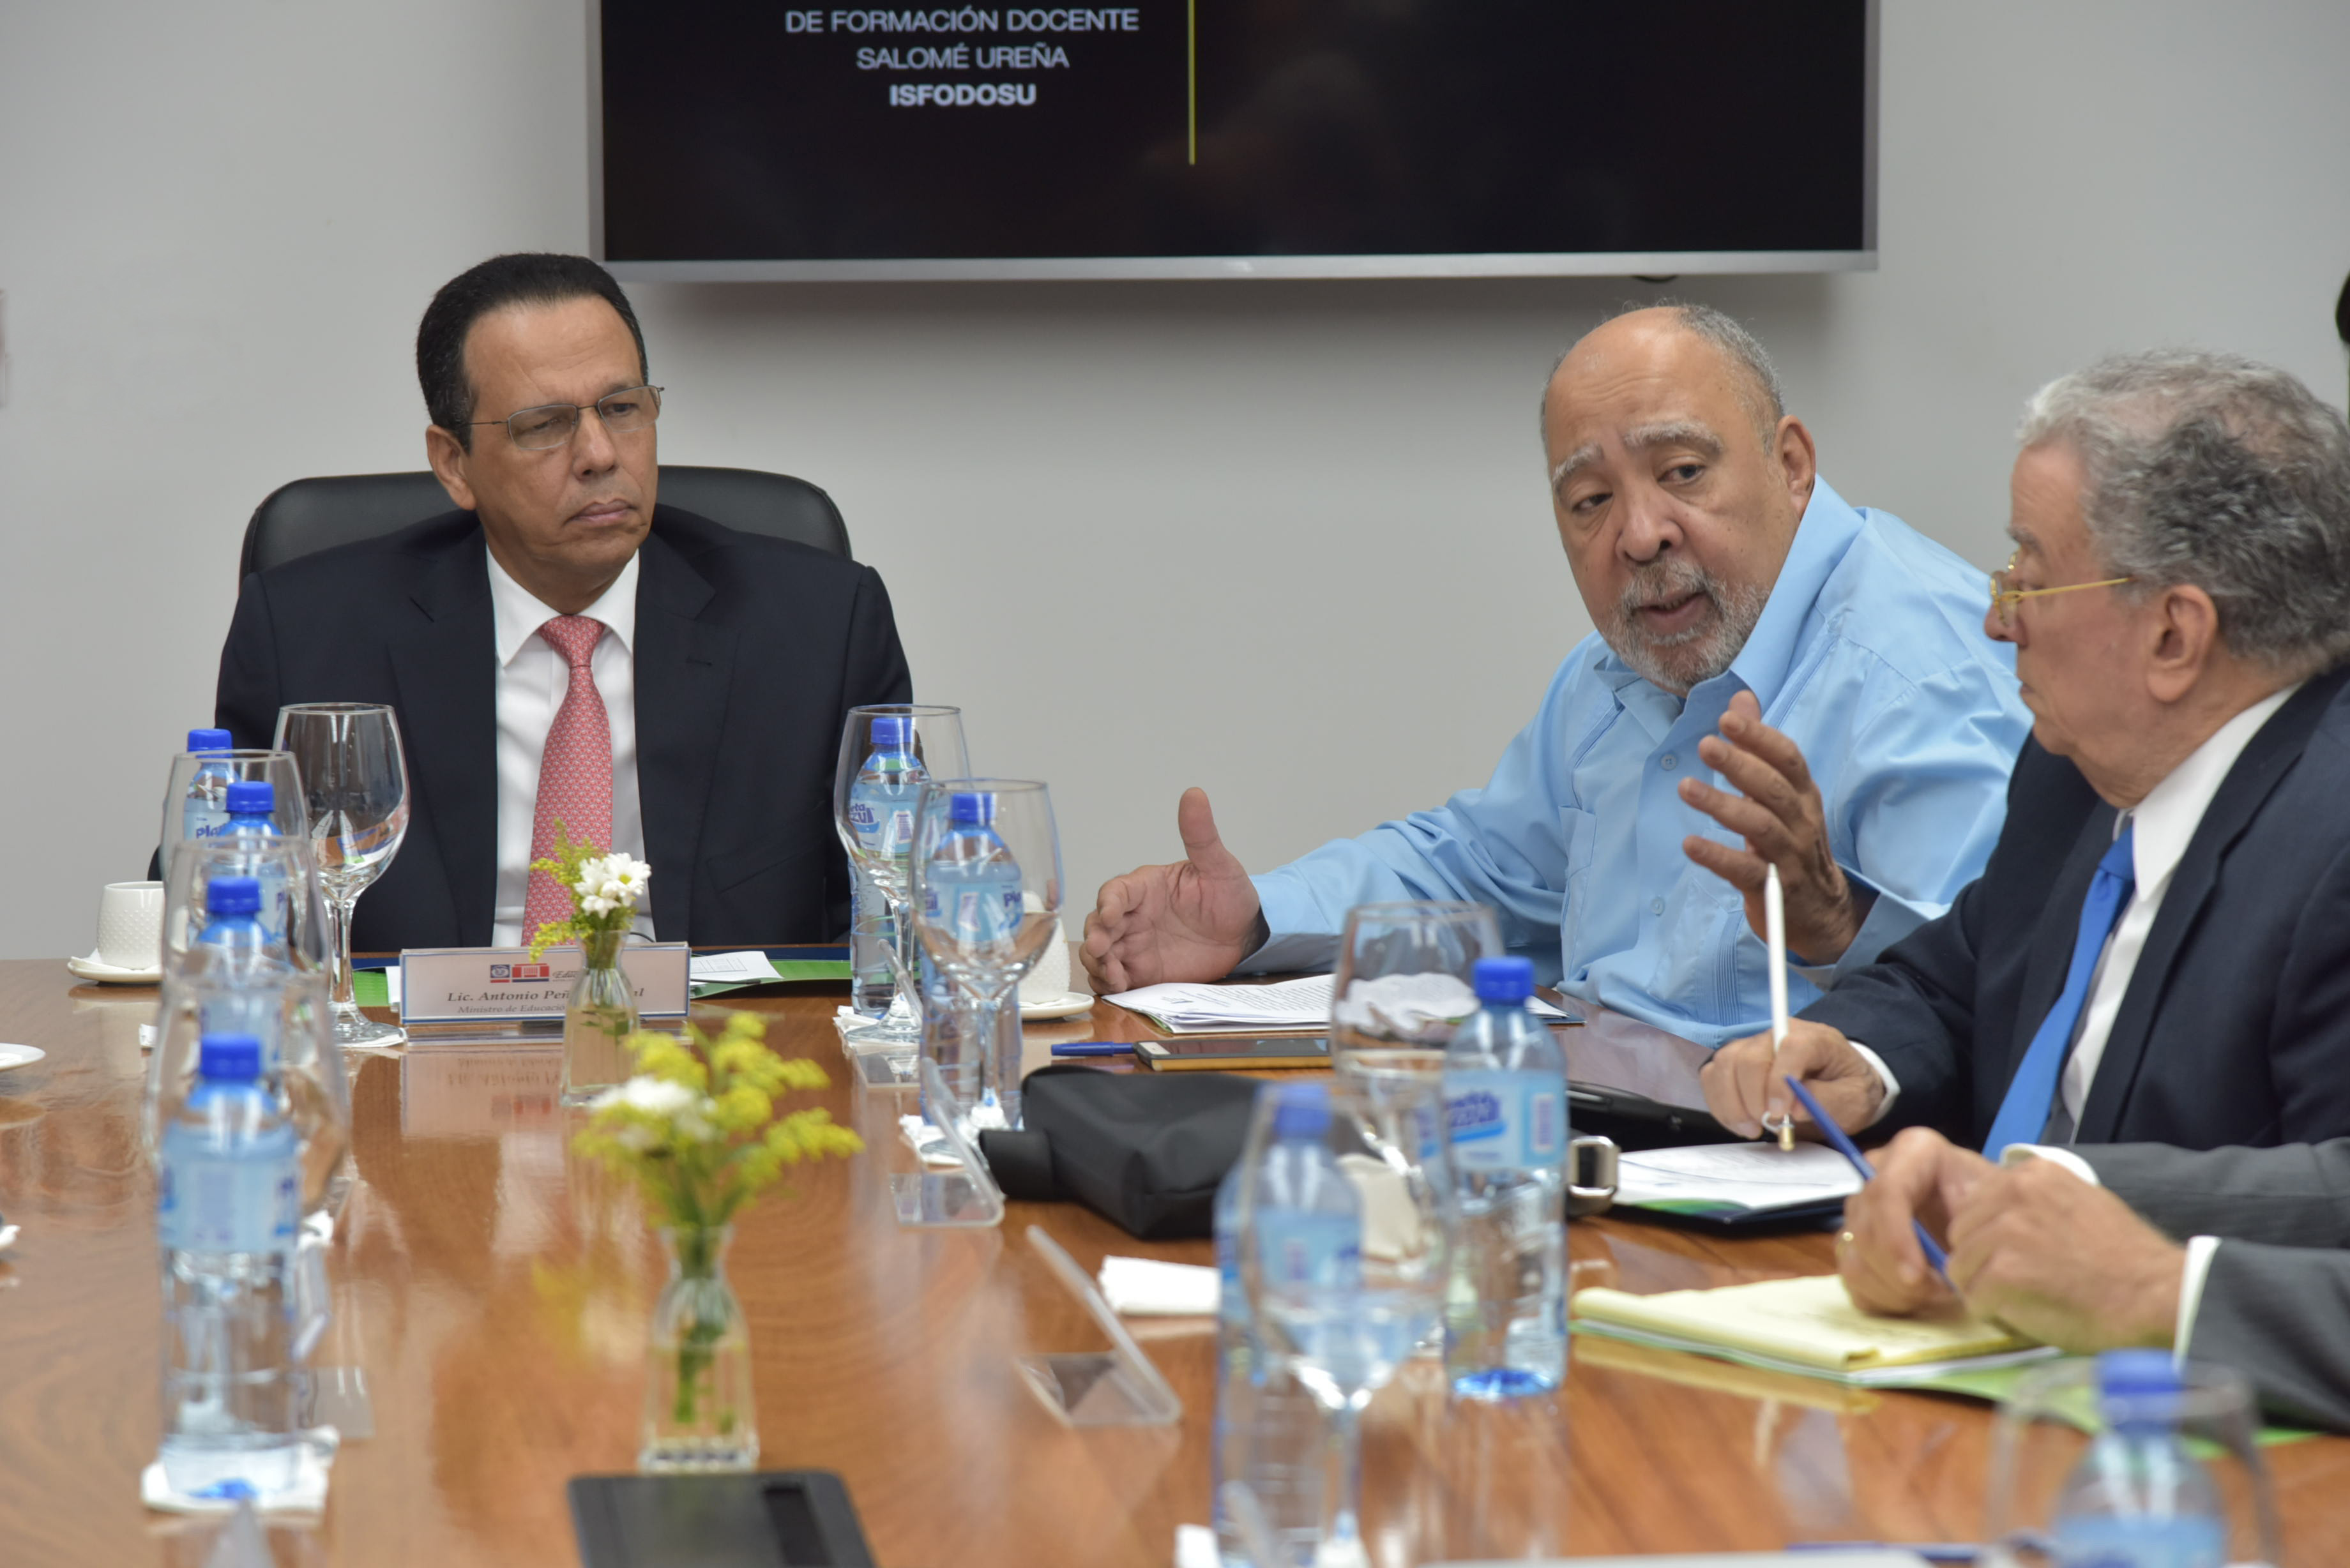  imagen Ministro Antonio Peña Mirabal sentado en reunión con consejo directivo del ISFODOSU 